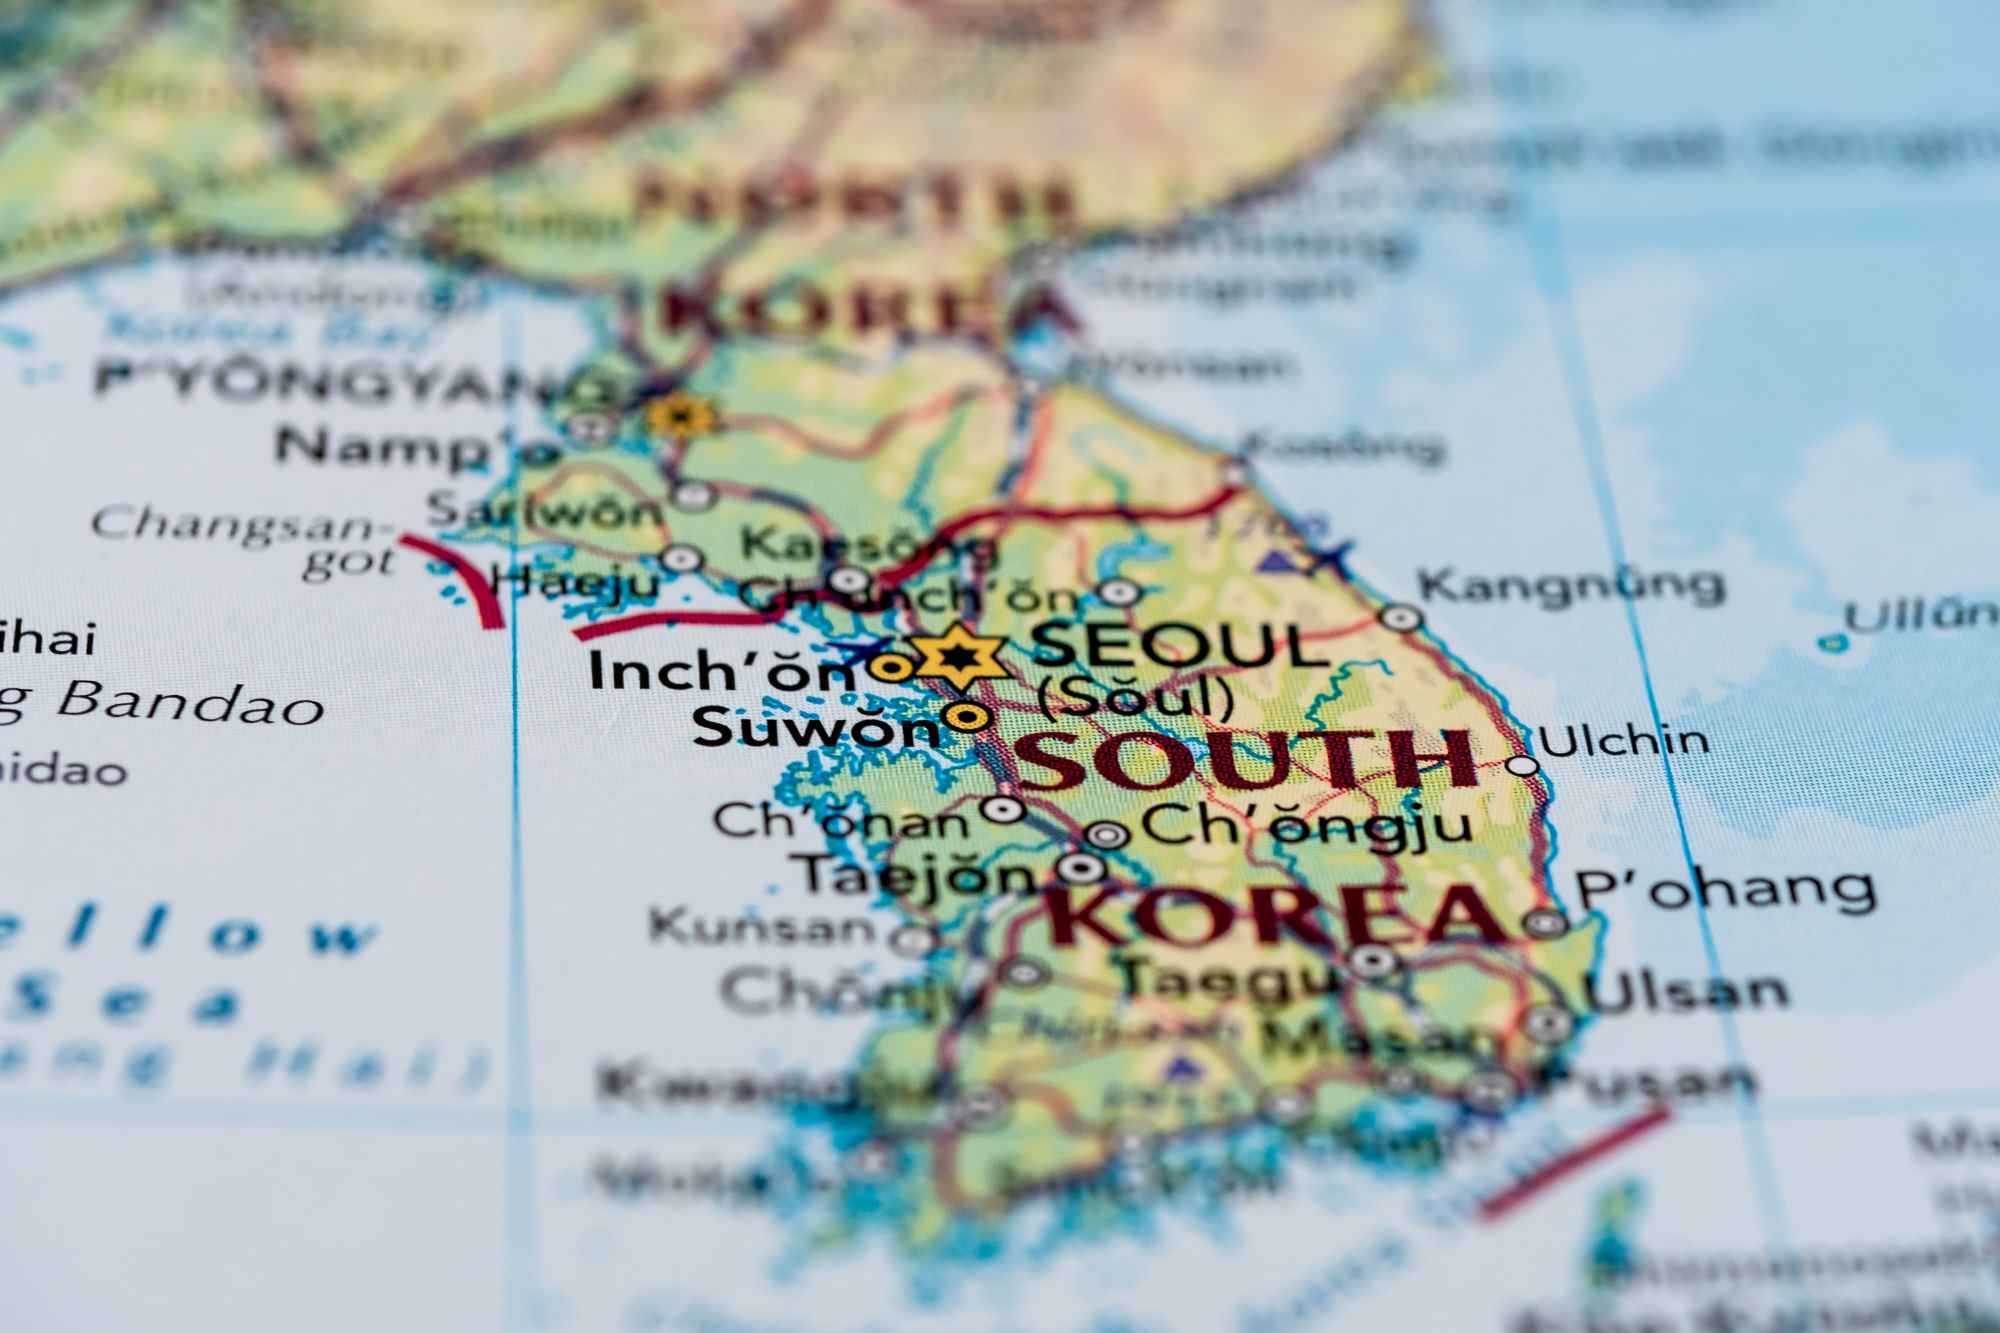 North Korea's Strategic Surprise in the Yellow Sea: A Future Scenario